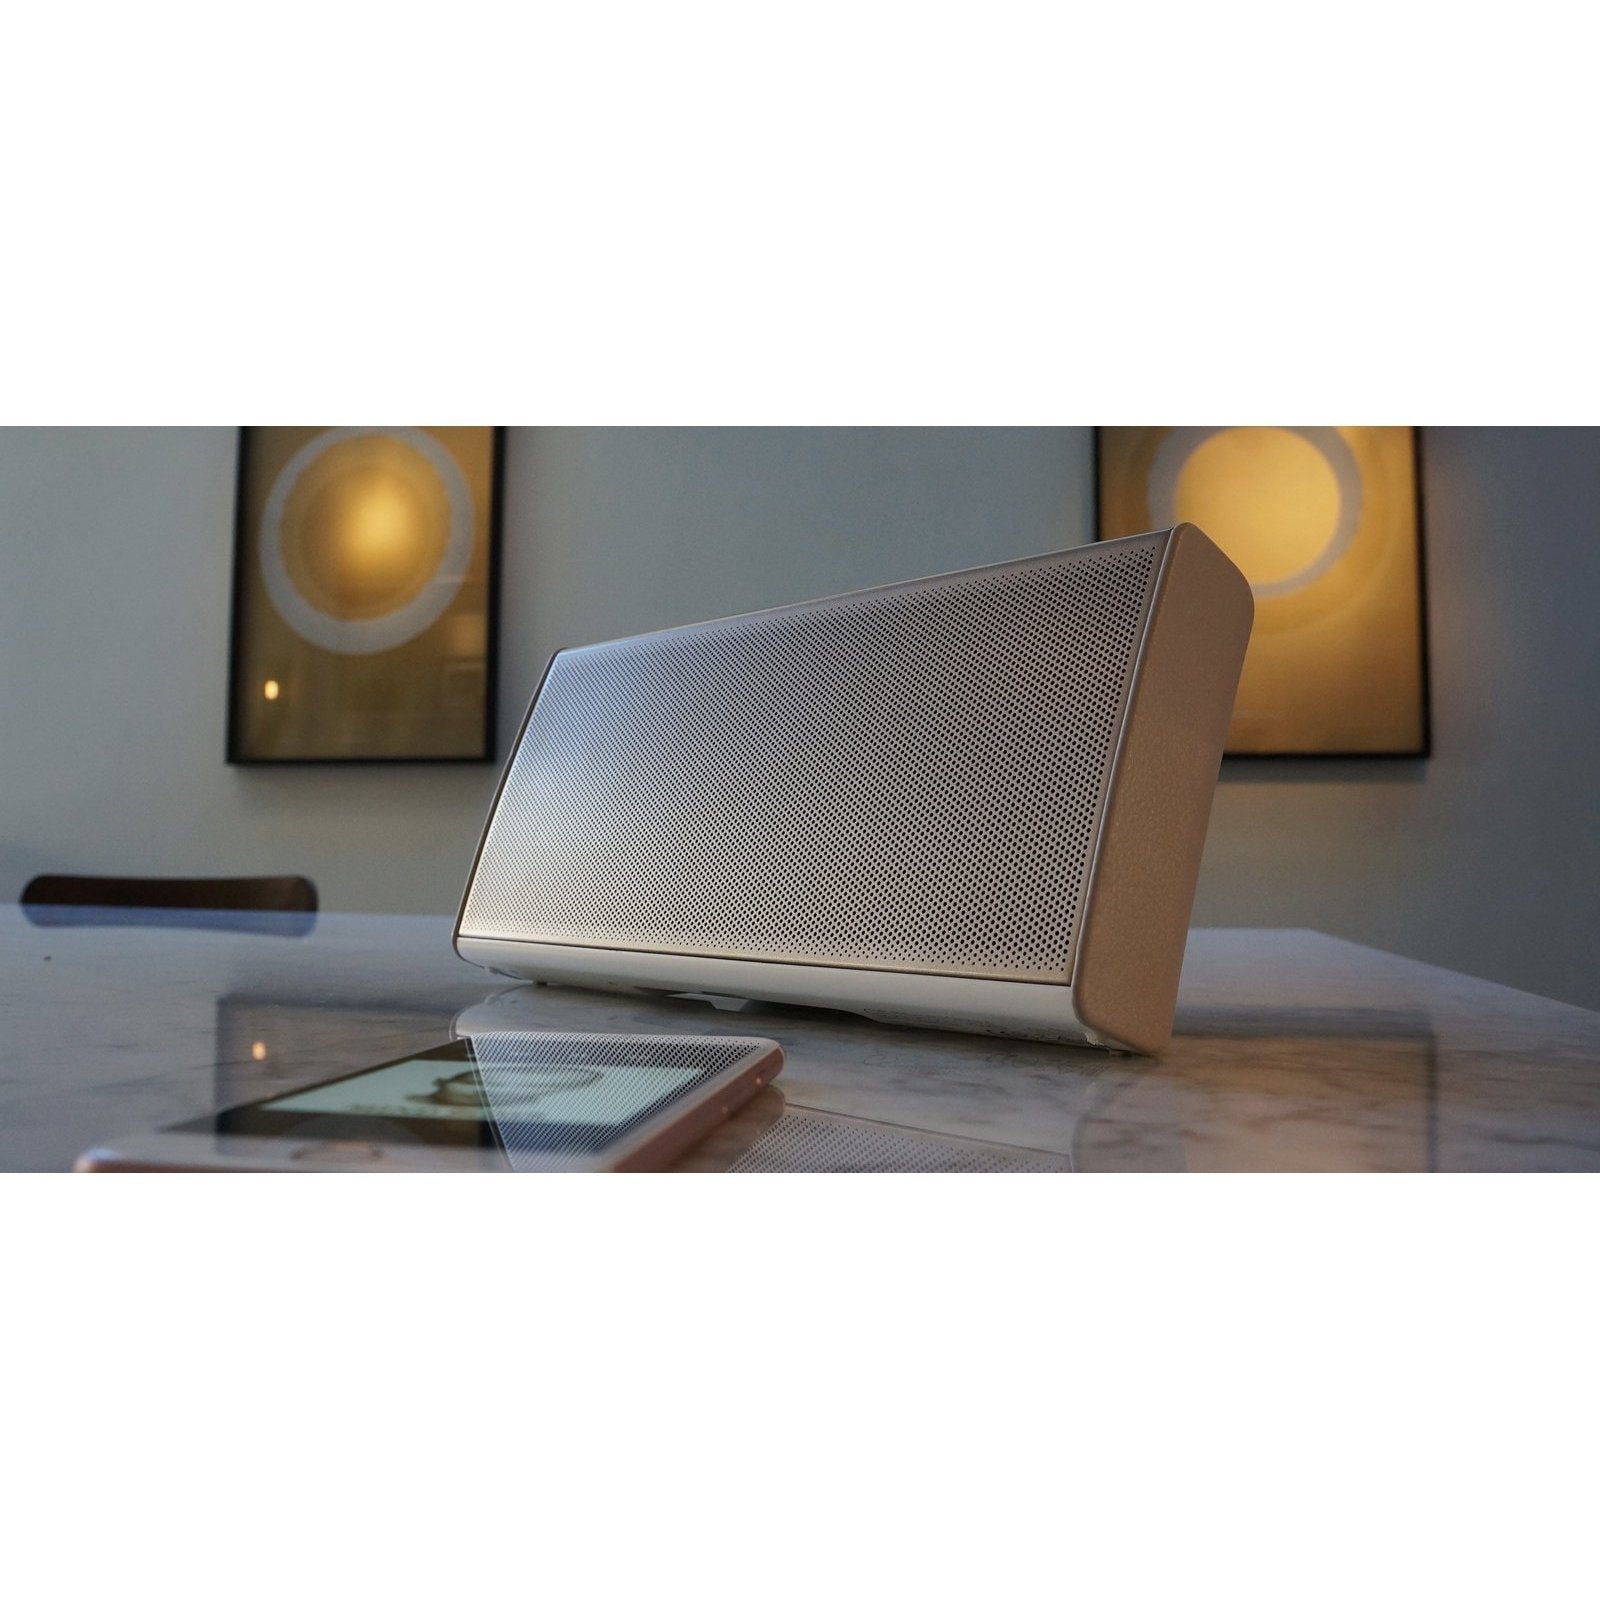 Cambridge Audio - G5 - Premium Bluetooth Speaker Australia